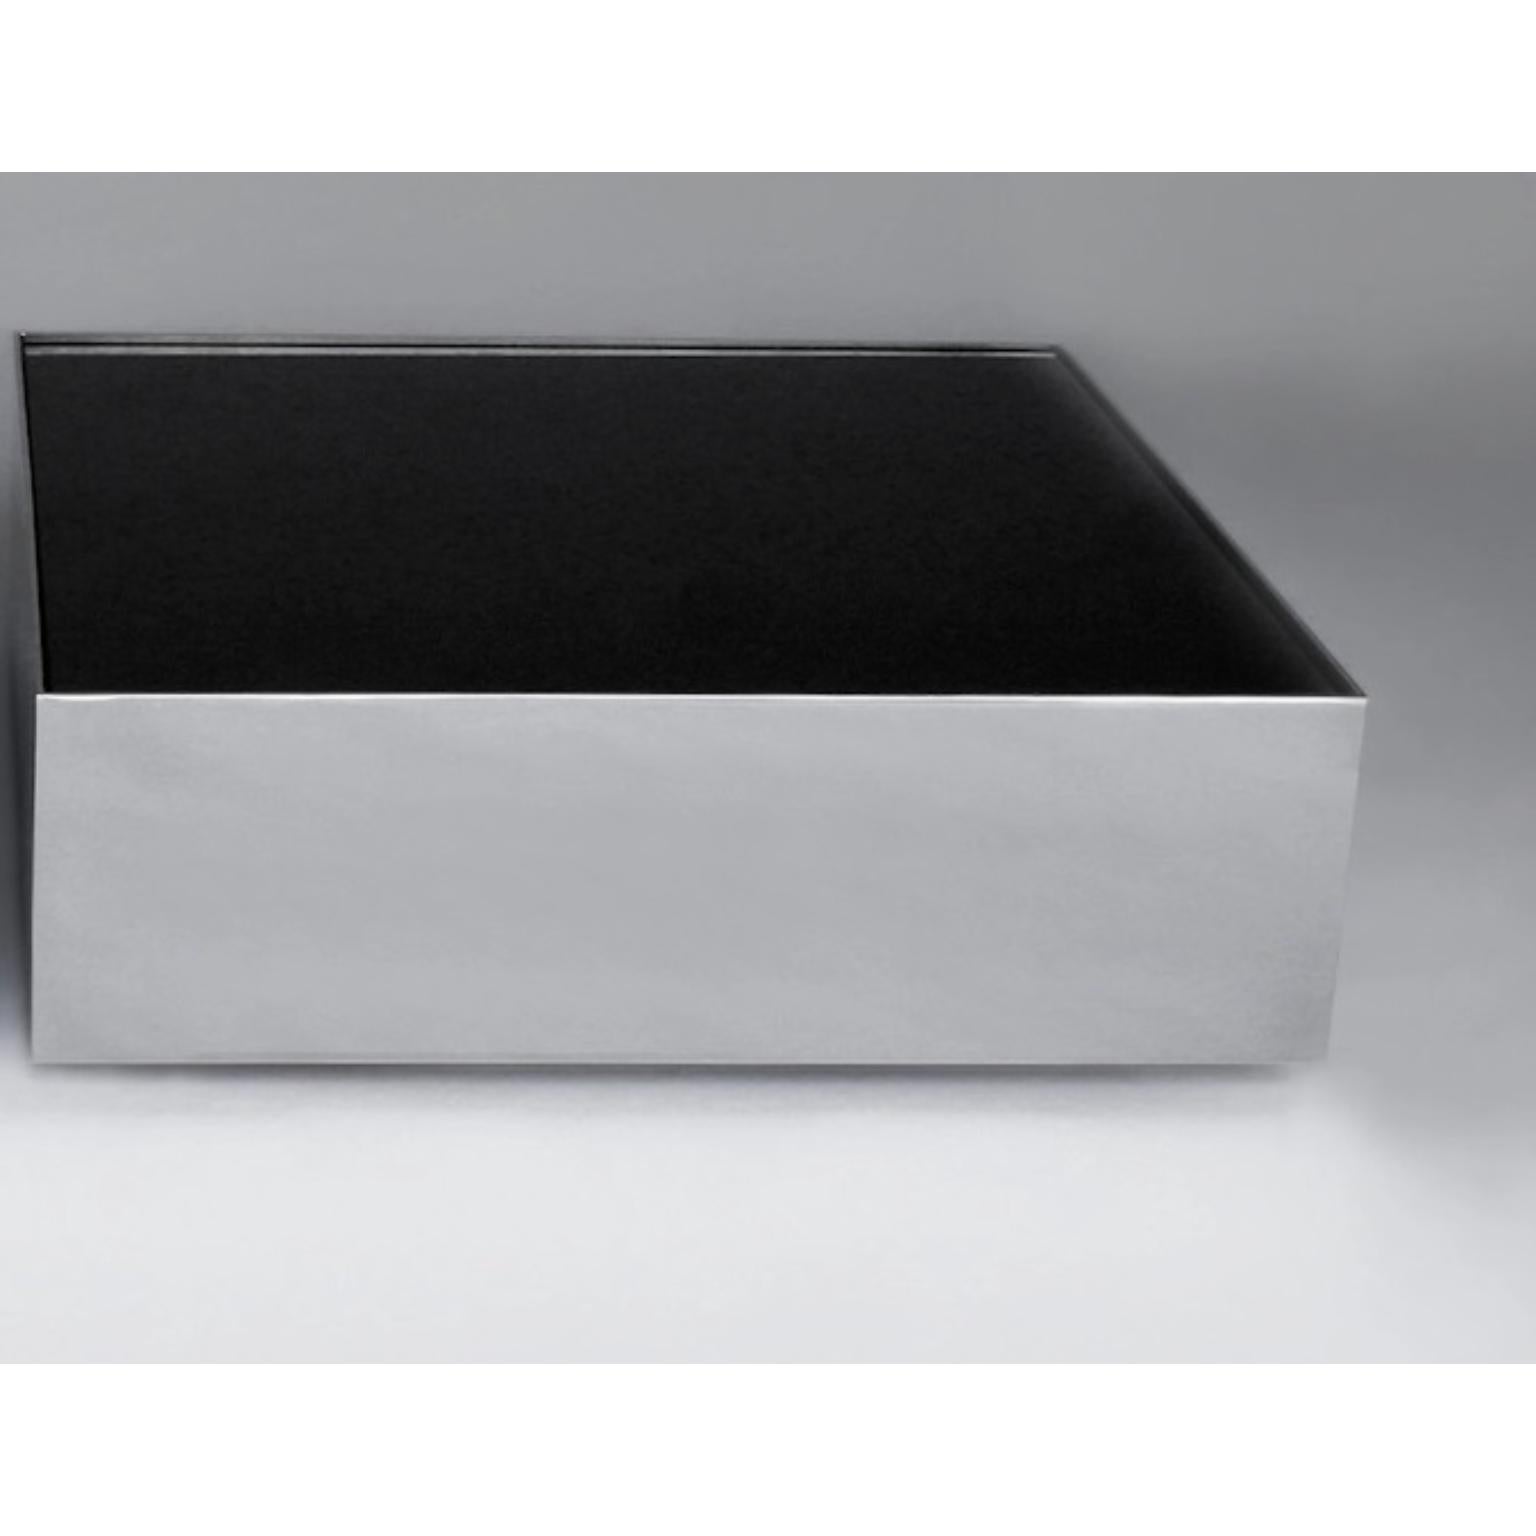 Table basse à glace noire par Phase Design
Dimensions : P 76,2 x L 76,2 x H 25,4 cm.
MATERIAL : Verre de tympan et métal chromé poli.

Table basse en acier avec plateau en verre spandrel. Disponible en finition chrome poli ou peinture en poudre. Les